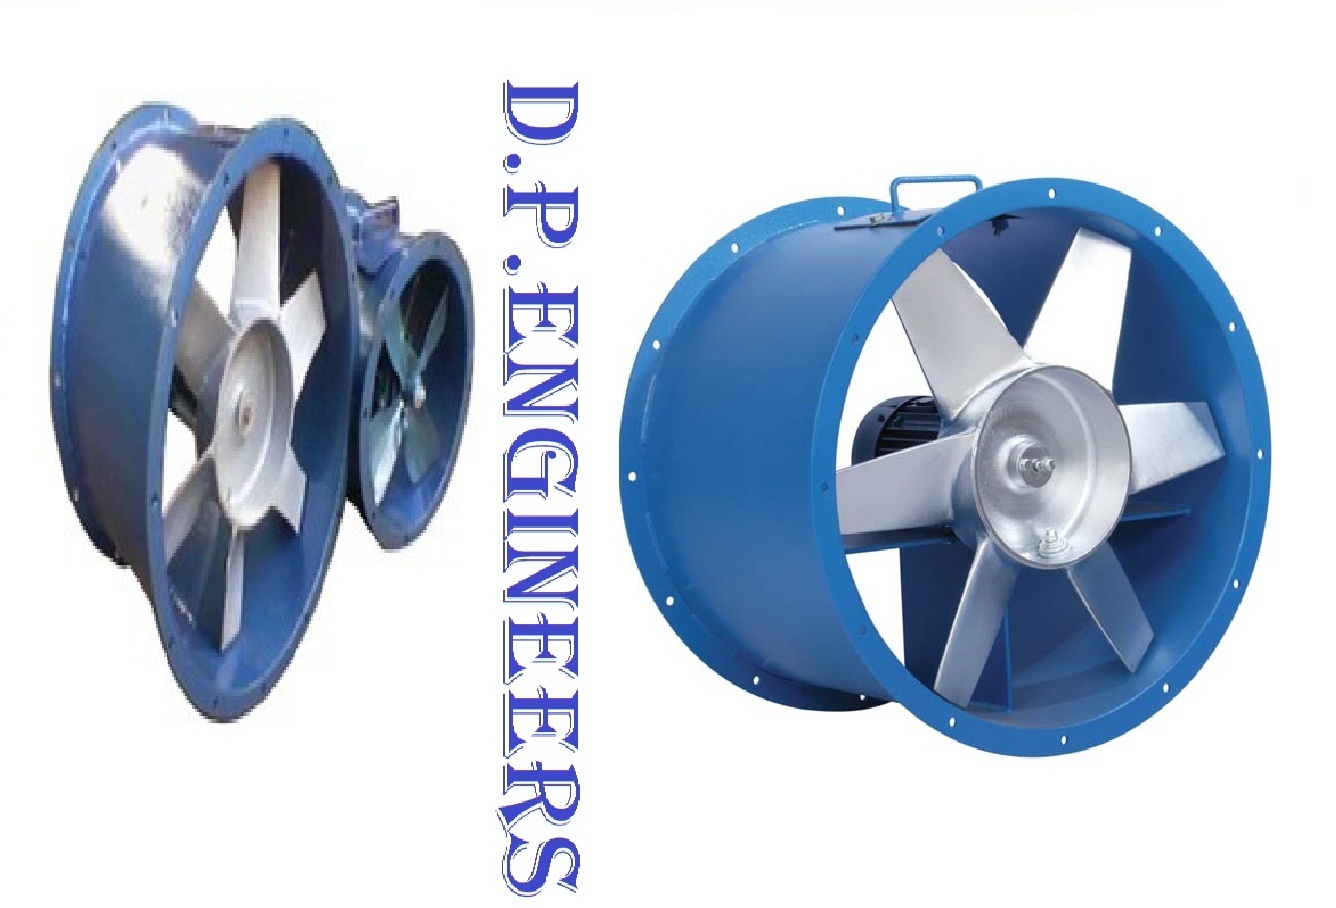 Direct Axial Flow Fan